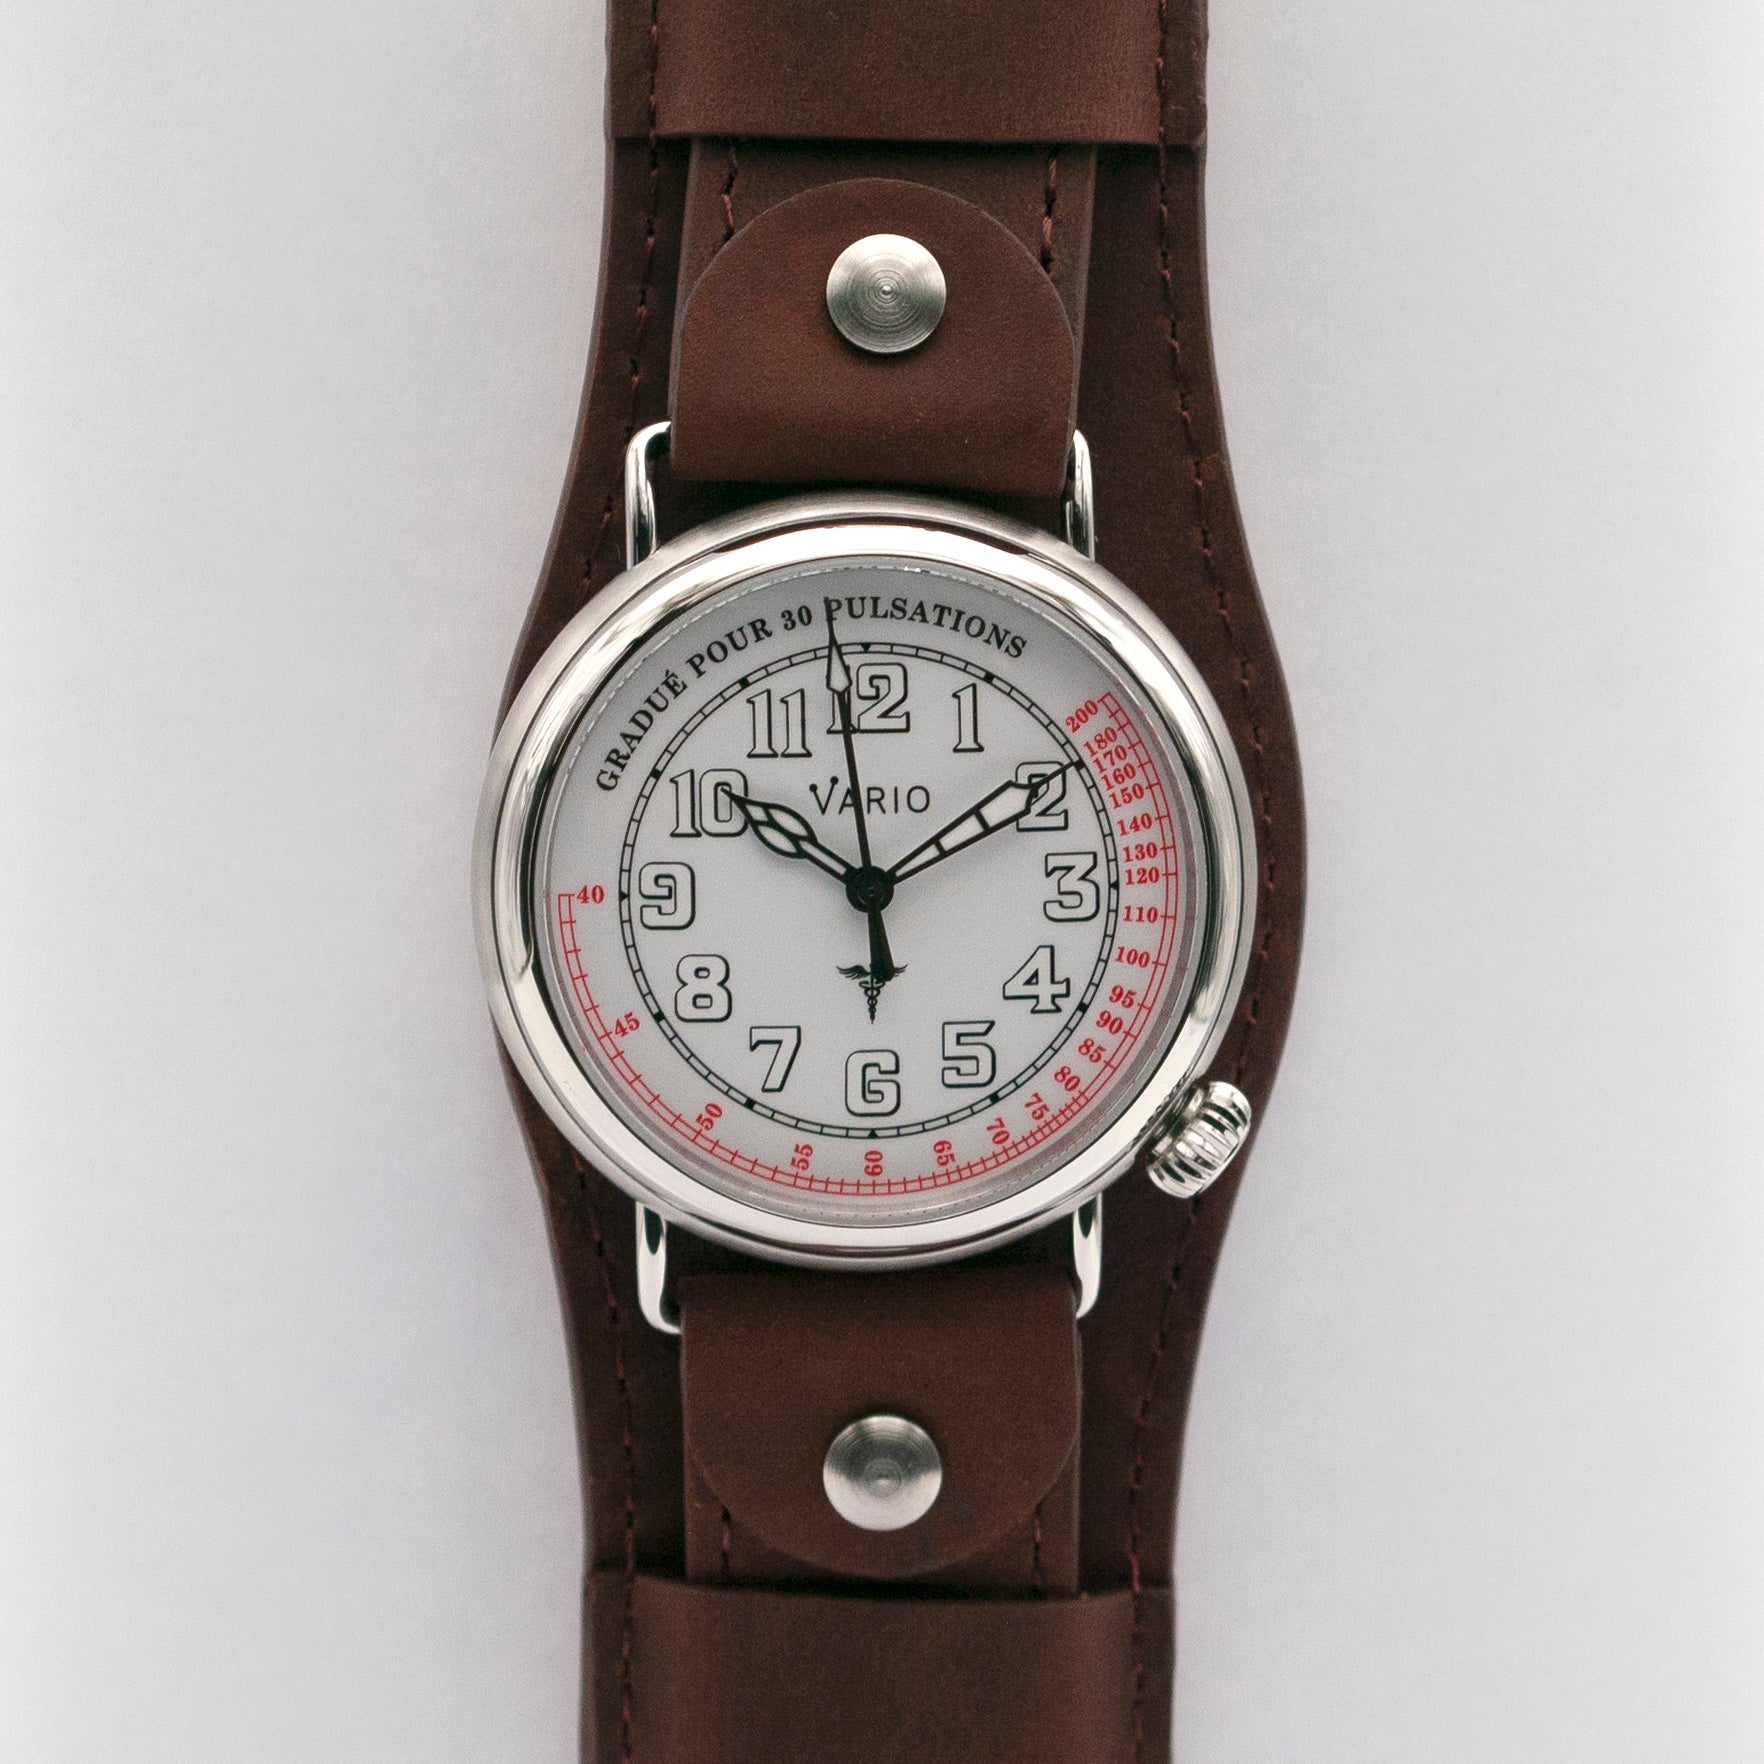 vario 1918 medic doctor pulsometer ww1 watch